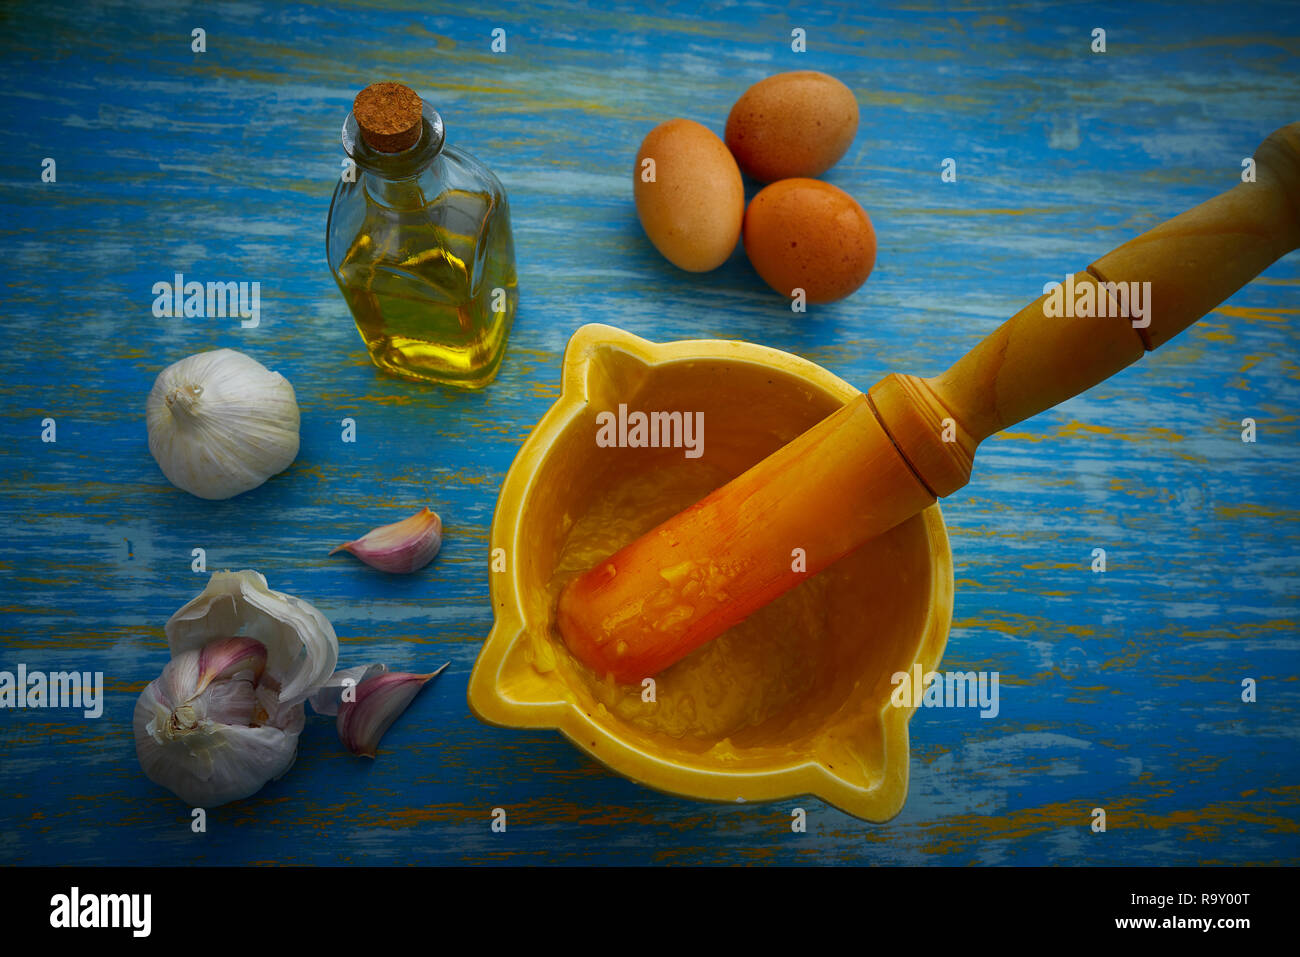 ajoaceite garlic and oil mediterramenan sauce with egg yolk Stock Photo